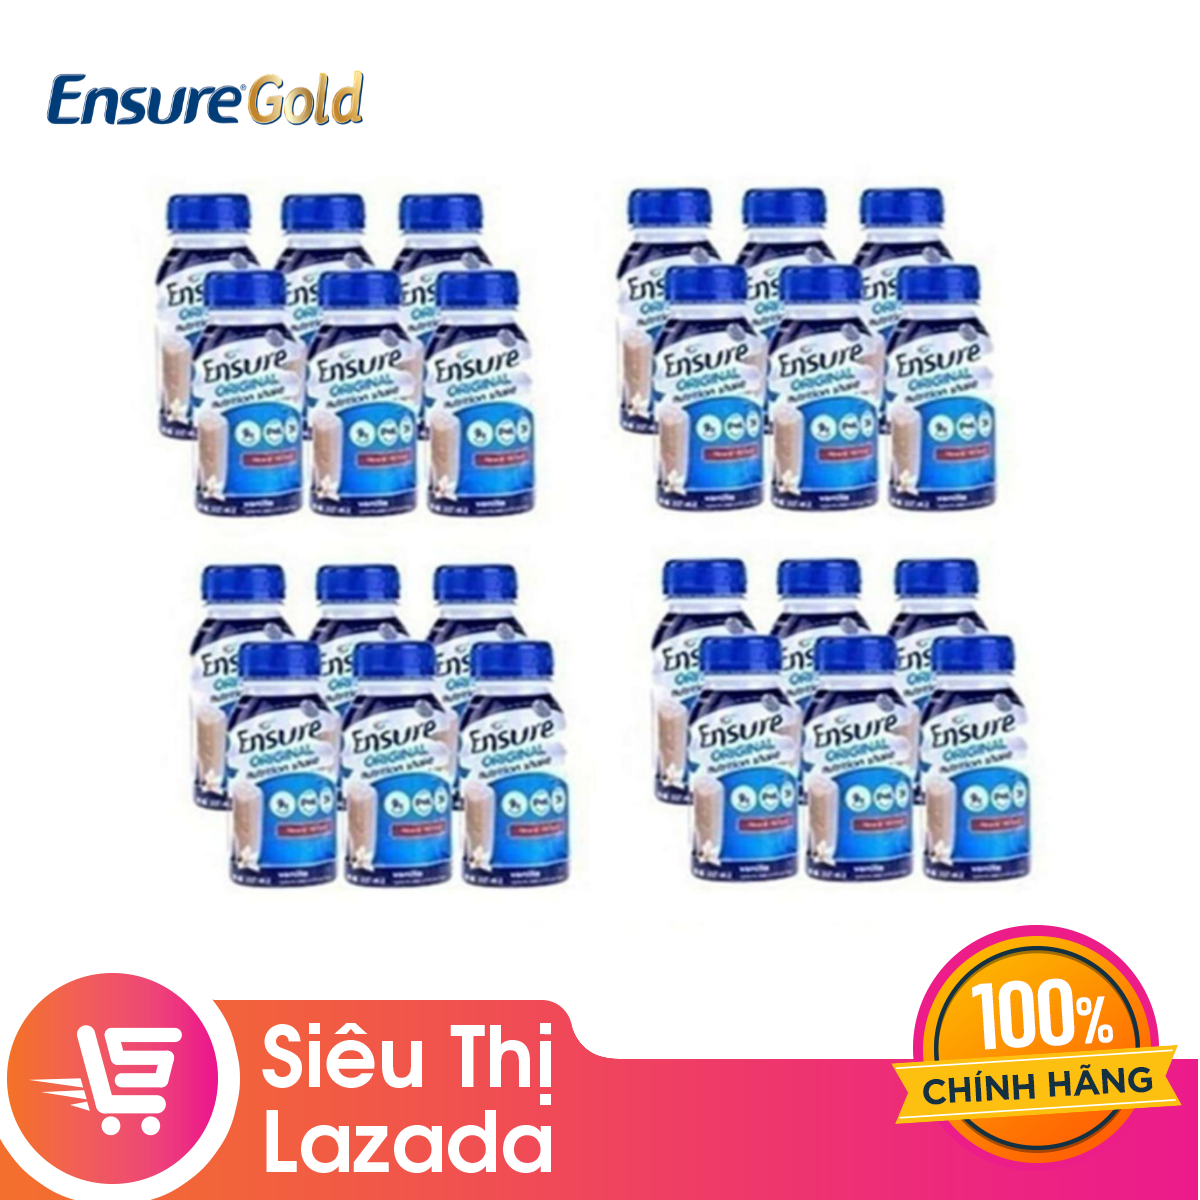 Thùng 24 chai sữa nước Ensure Vani 237ml thích hợp cho nhiều đối tượng cung cấp đầy đủ dinh dưỡng giúp hệ tiêu hóa khỏe mạnh-Giới hạn 5 sản phẩm/khách hàng